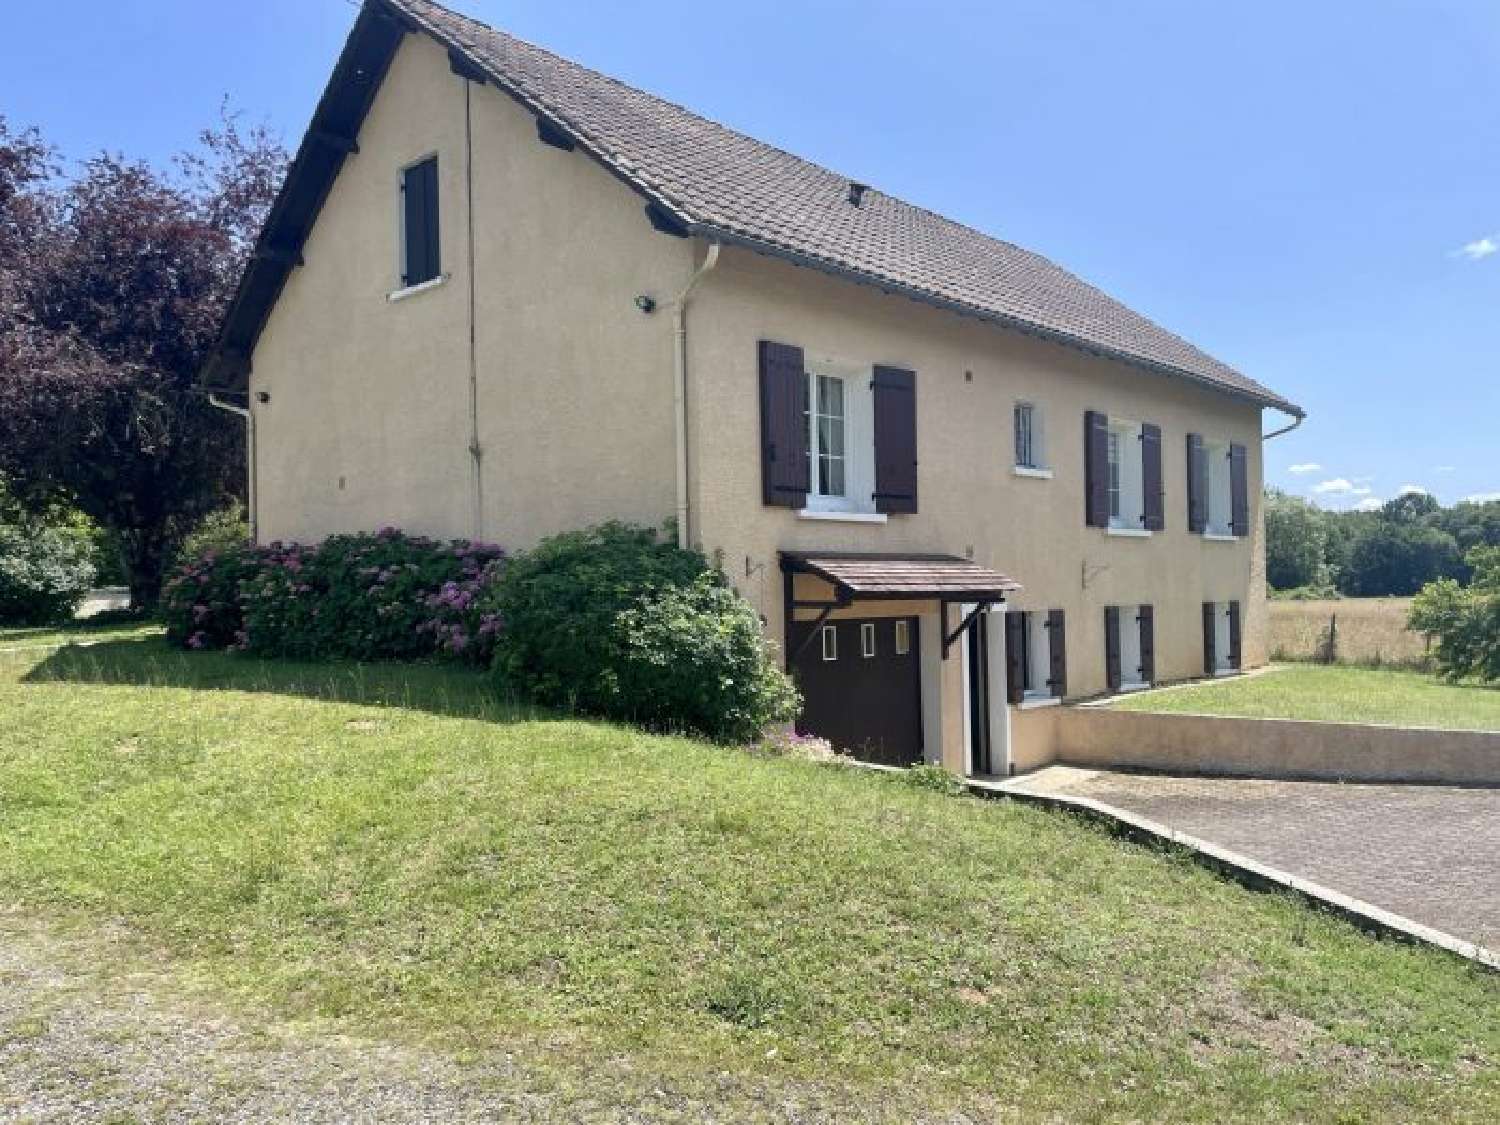  à vendre maison Brantôme Dordogne 3